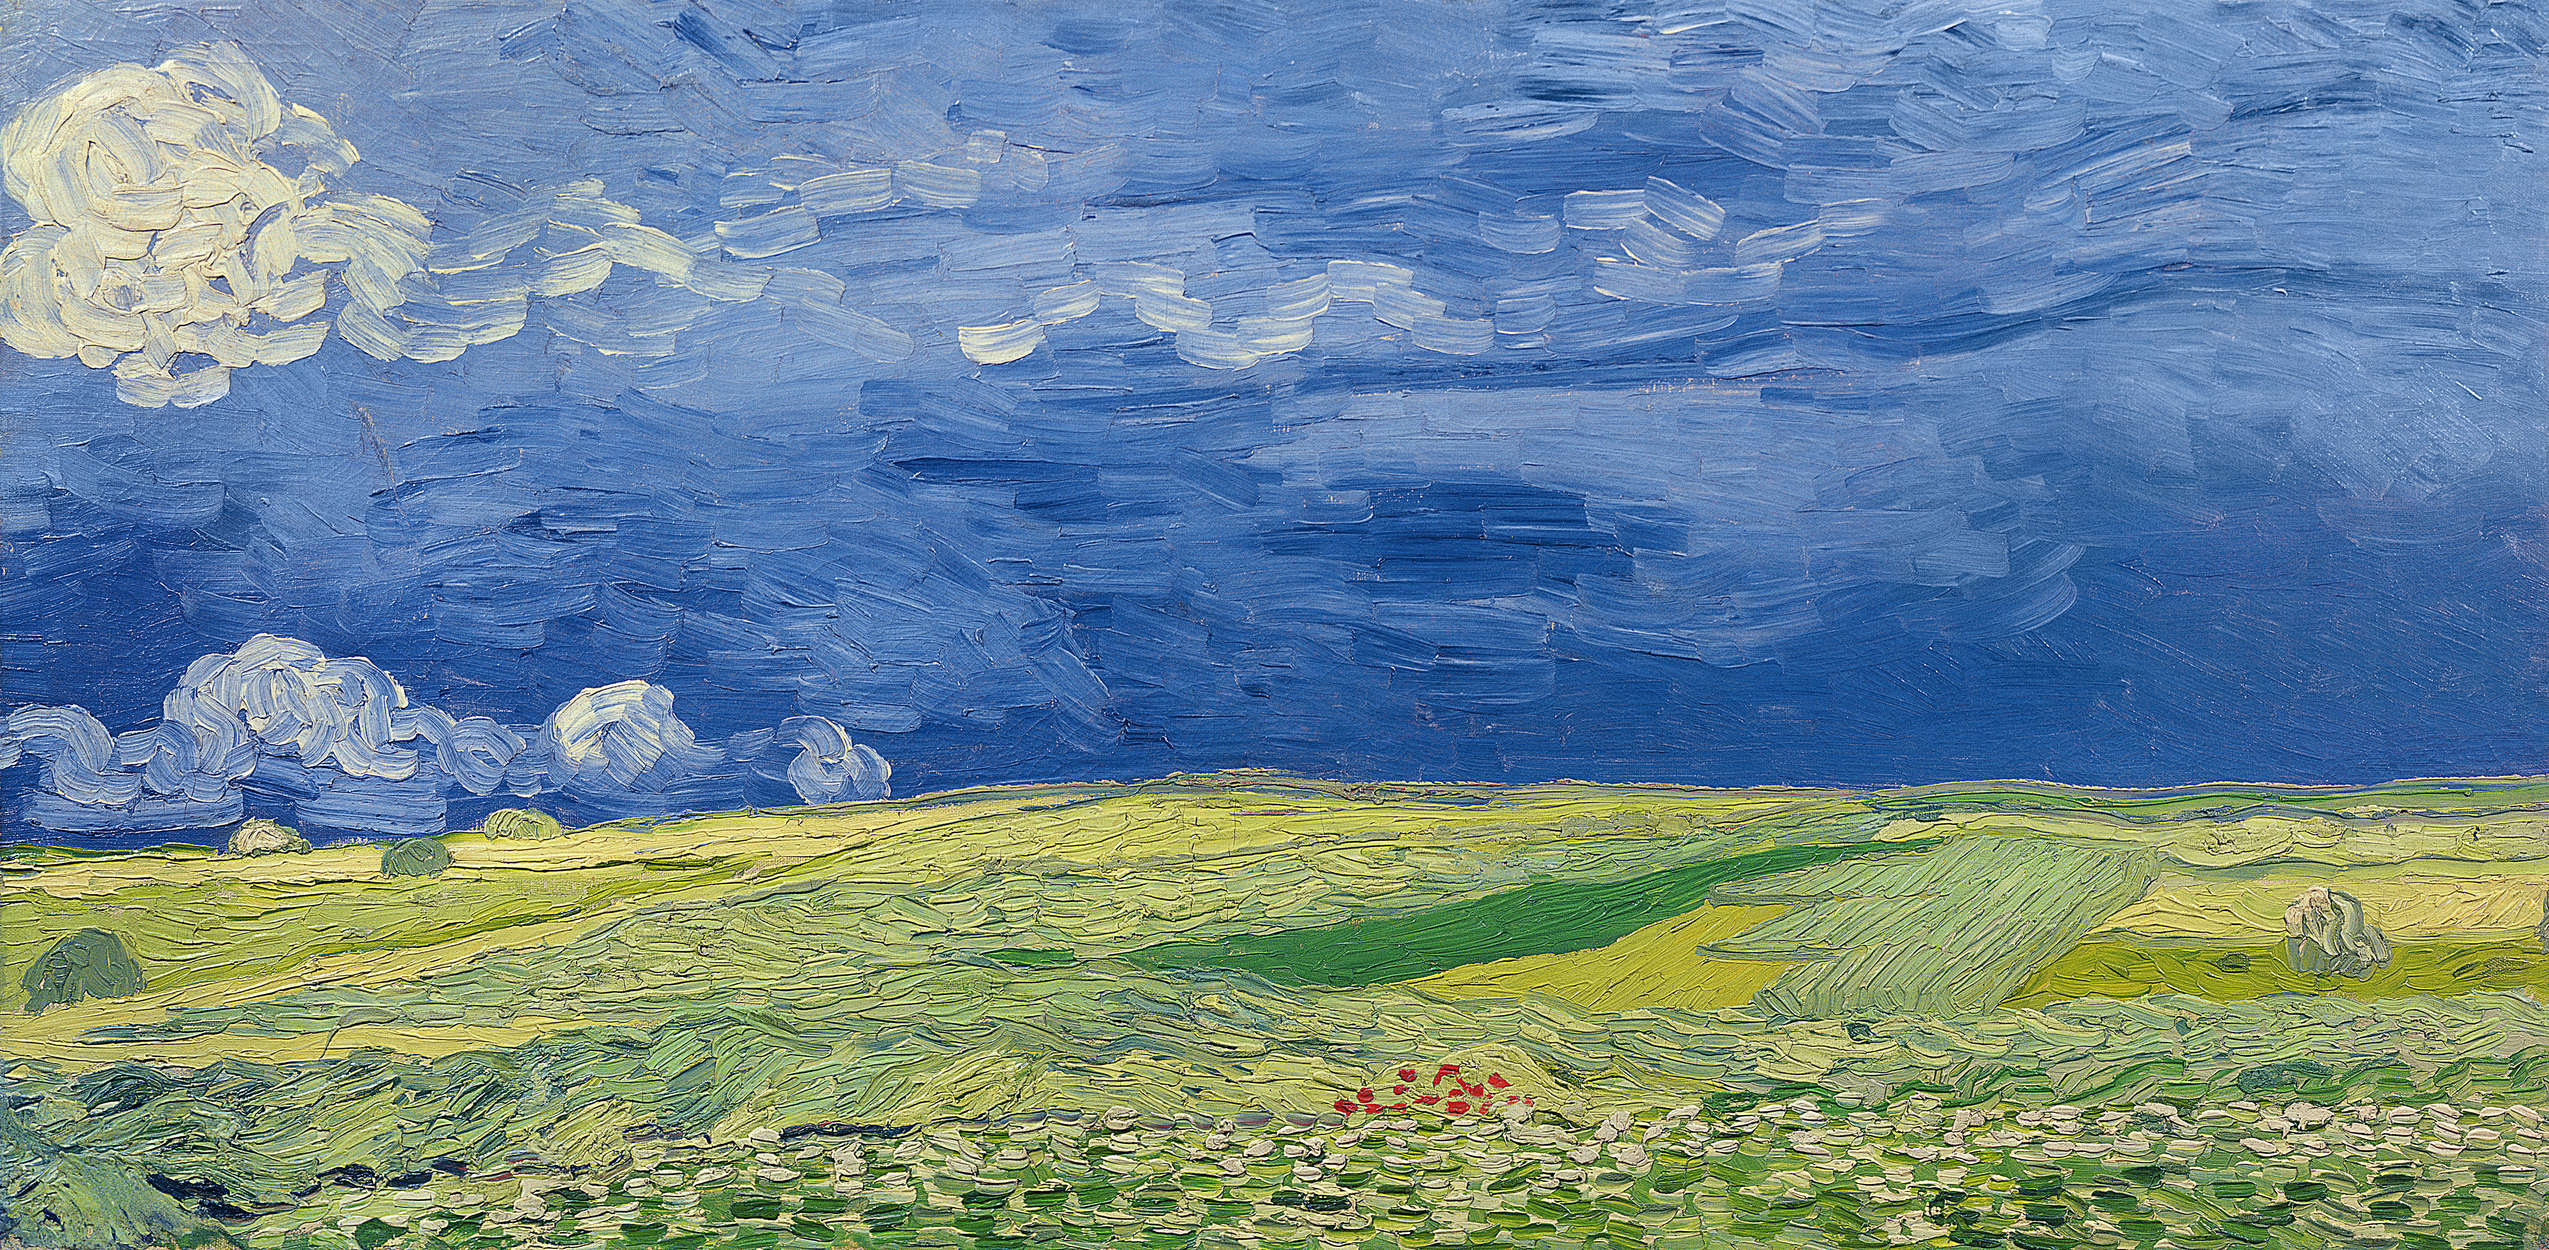             Muurschildering "Korenvelden onder stormwolken" van Vincent van Gogh
        